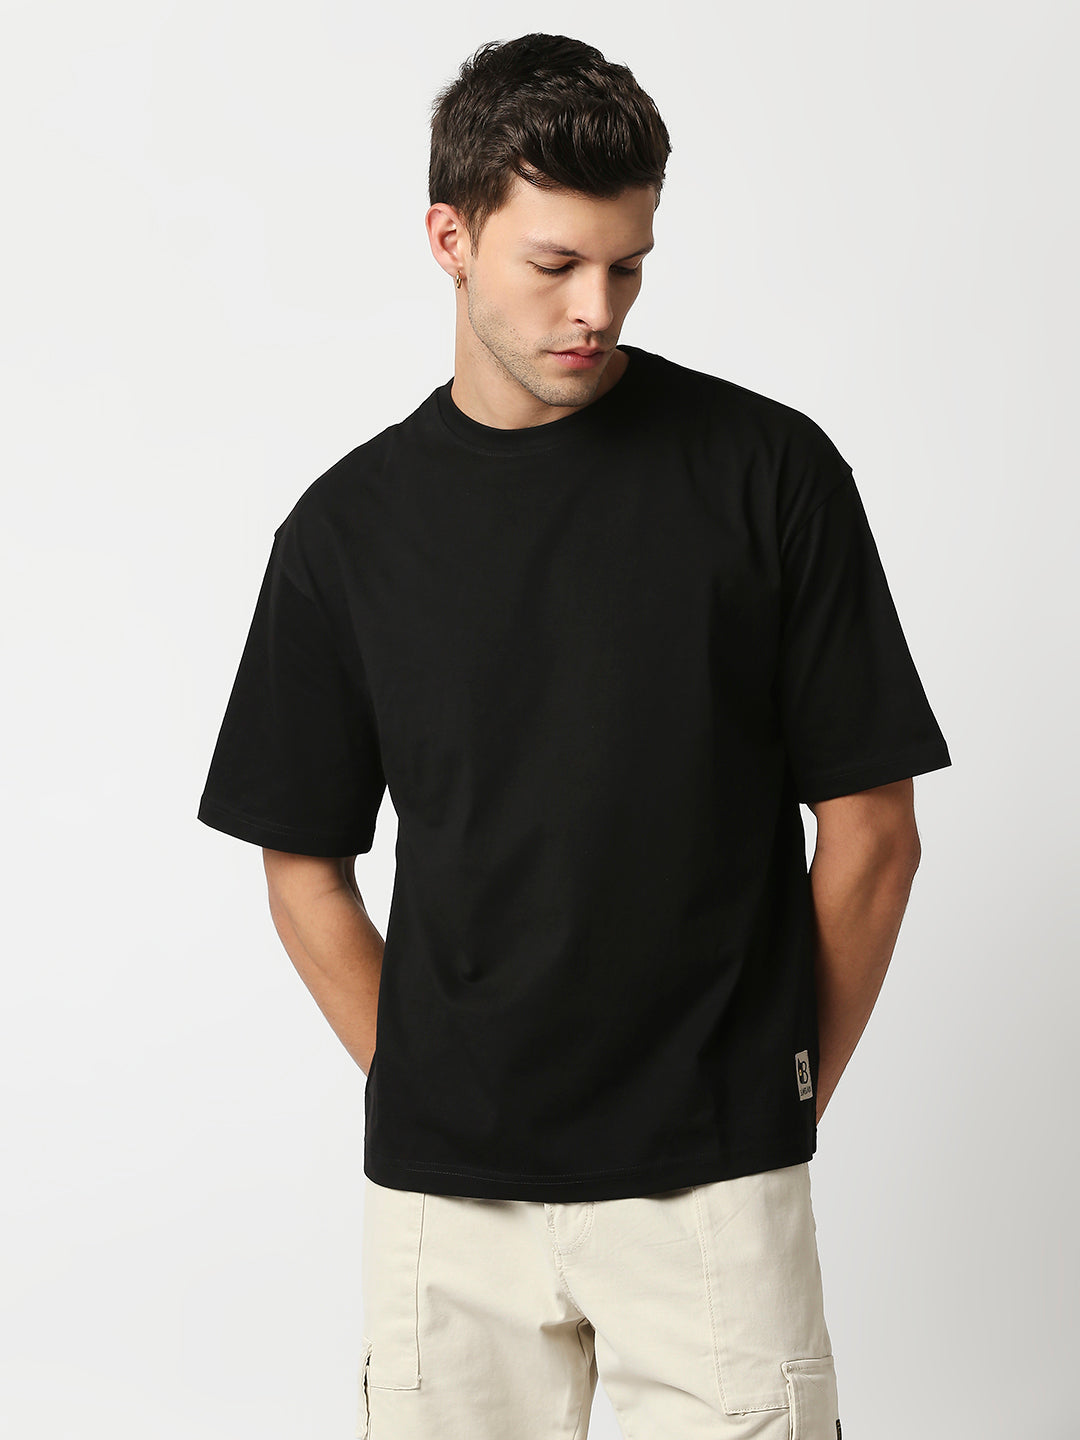 Shop Blamblack Men's Baggy Plain Black Color Oversized T Shirt